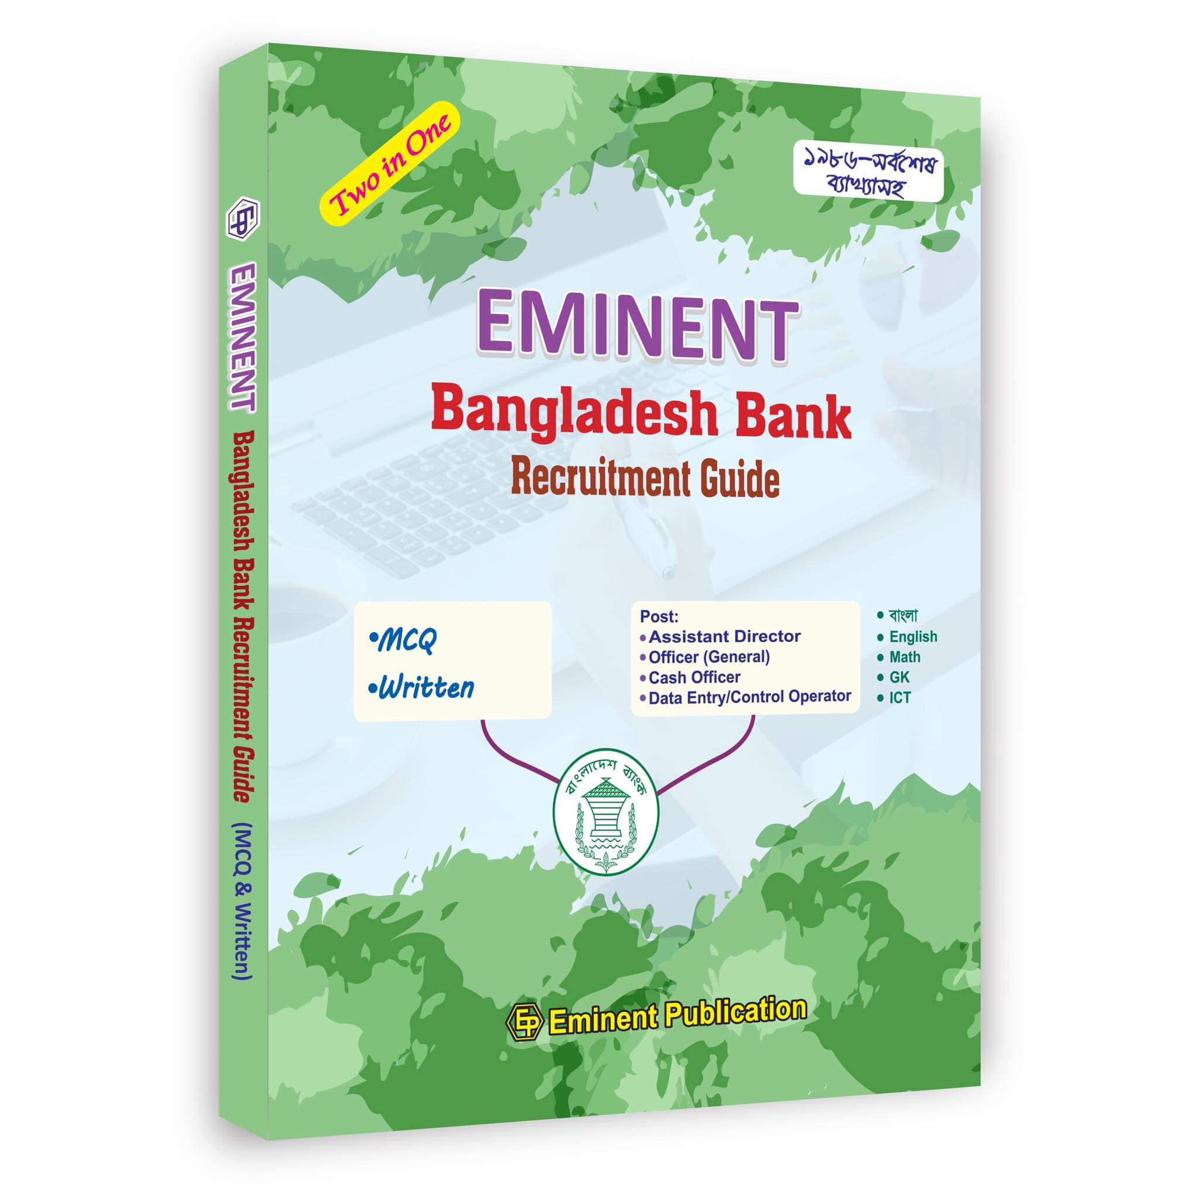 EMINENT Bangladesh Bank Recruitment Guide